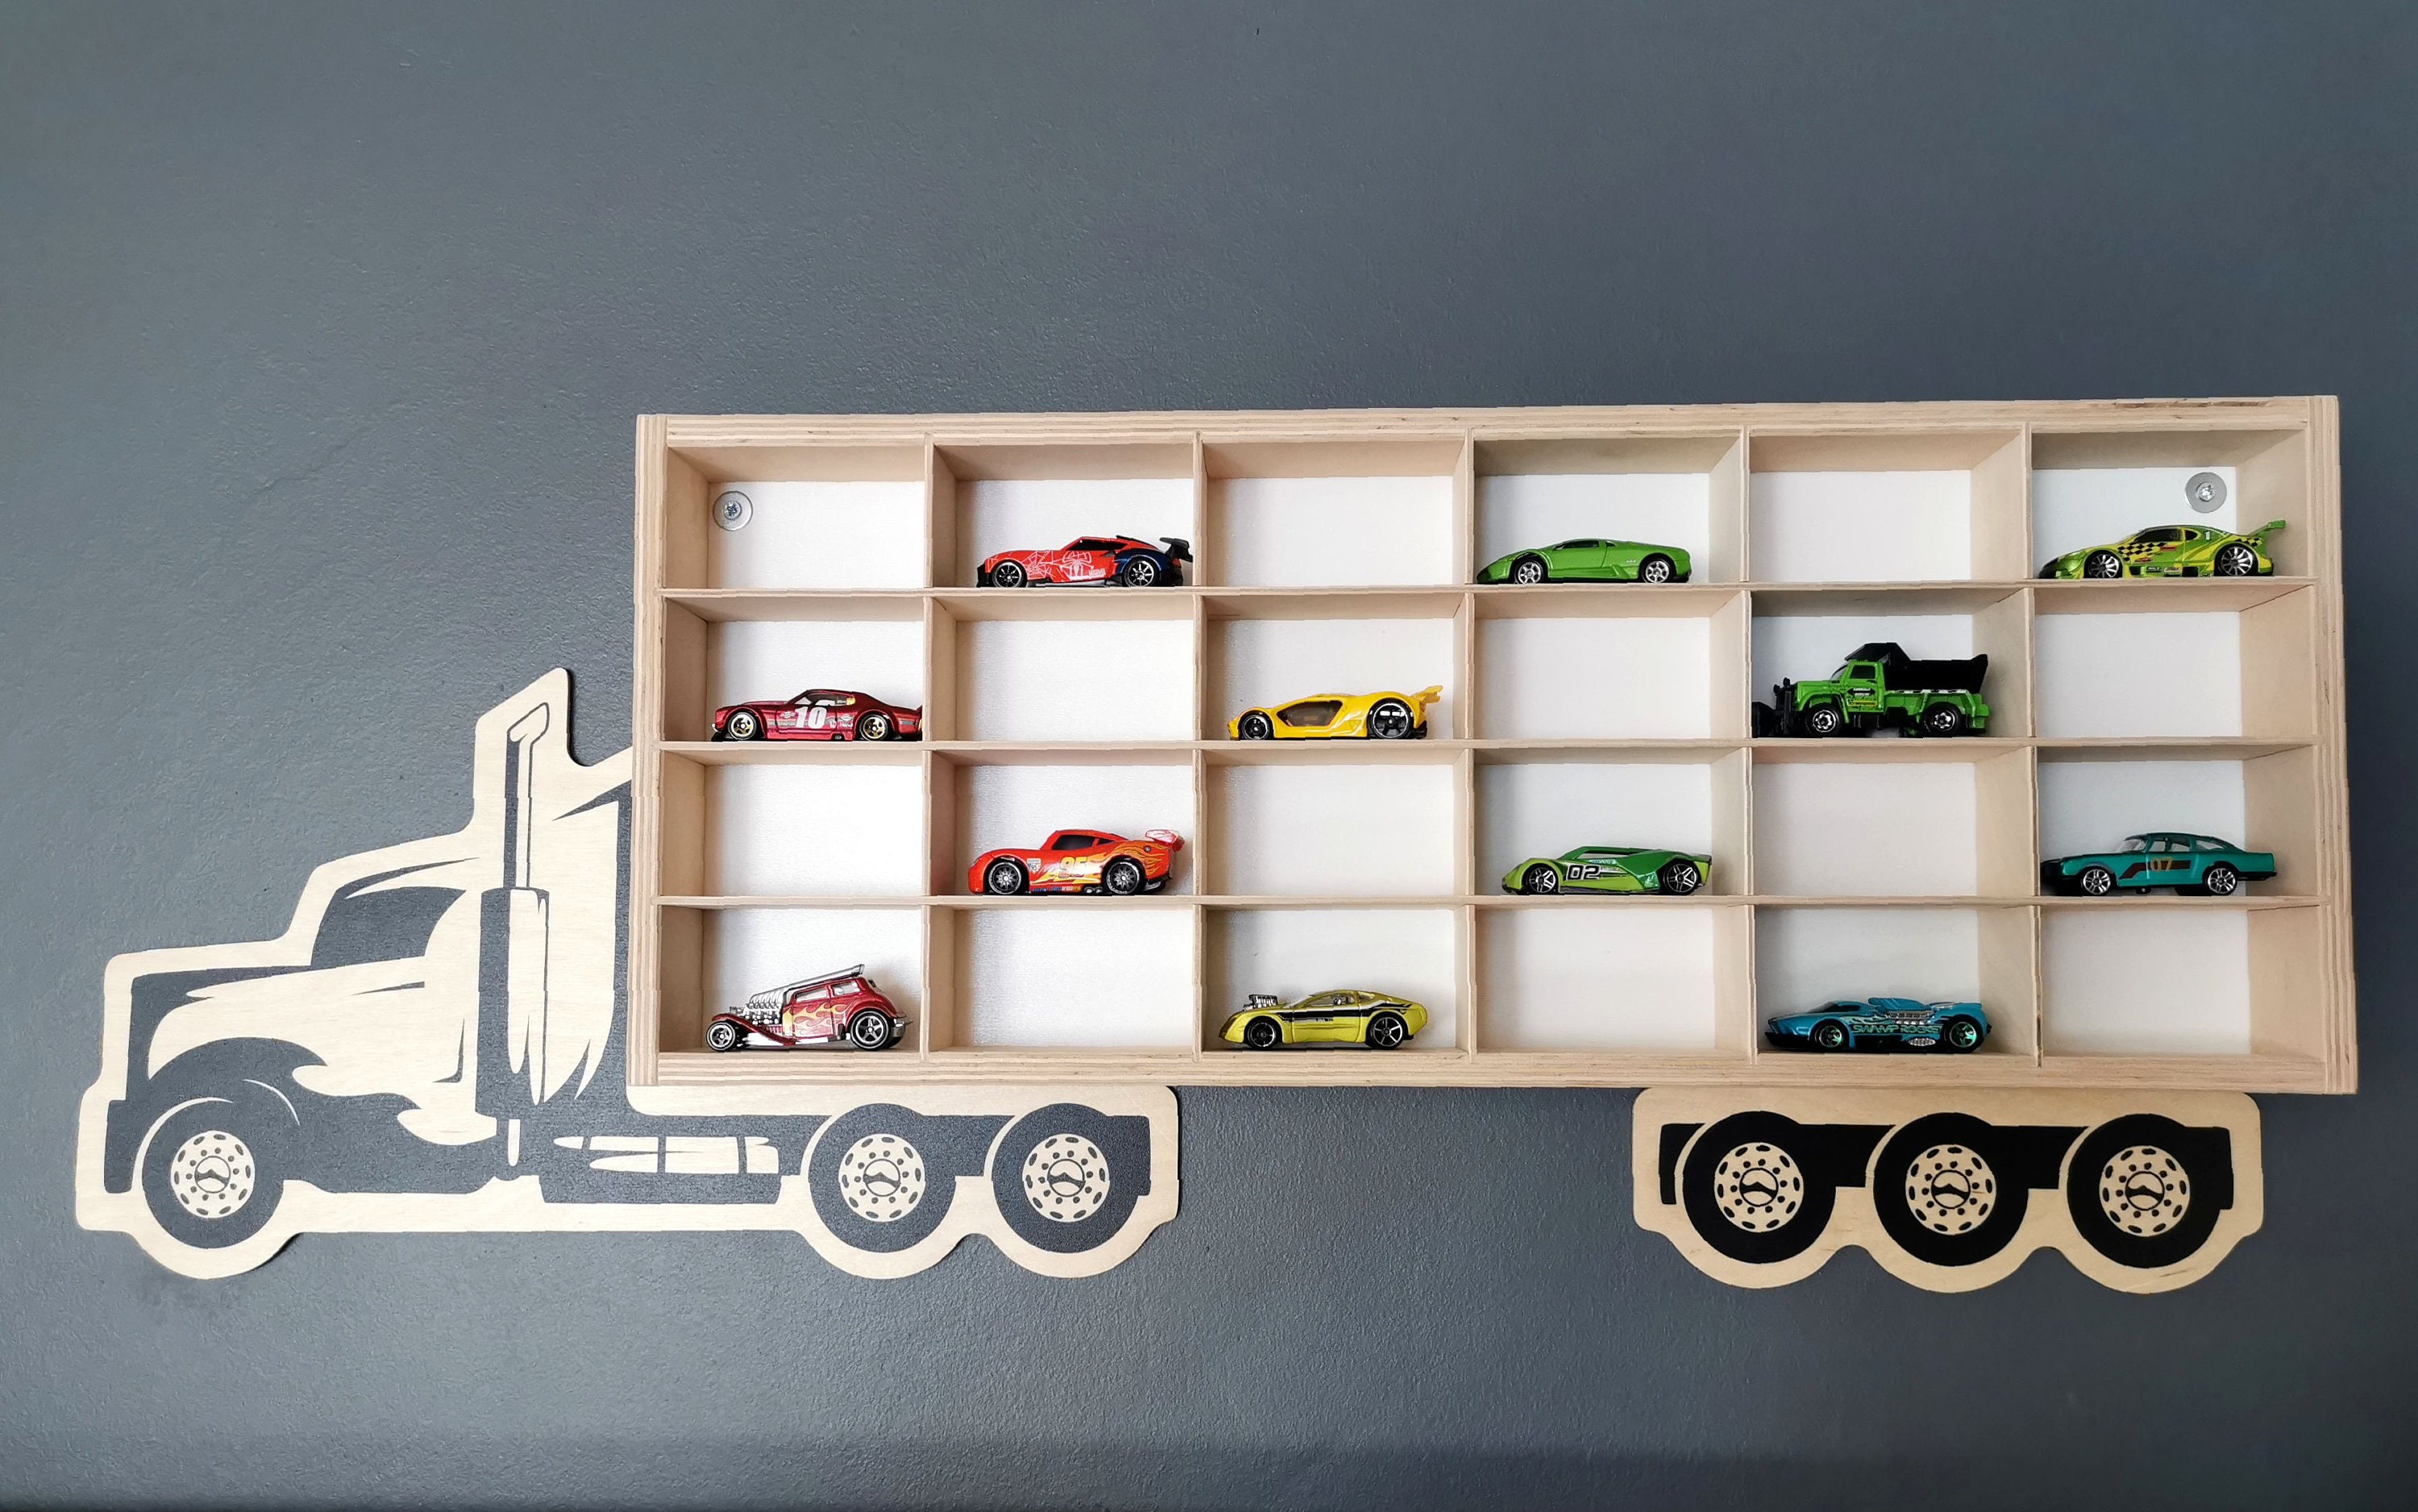 Toy Car Shelf / Toy Car Storage/ Hot Wheels Storage / Diecast Model Car /  Display Case Shelf / Garage for Hot Wheels / Matchbox Toy Cars 